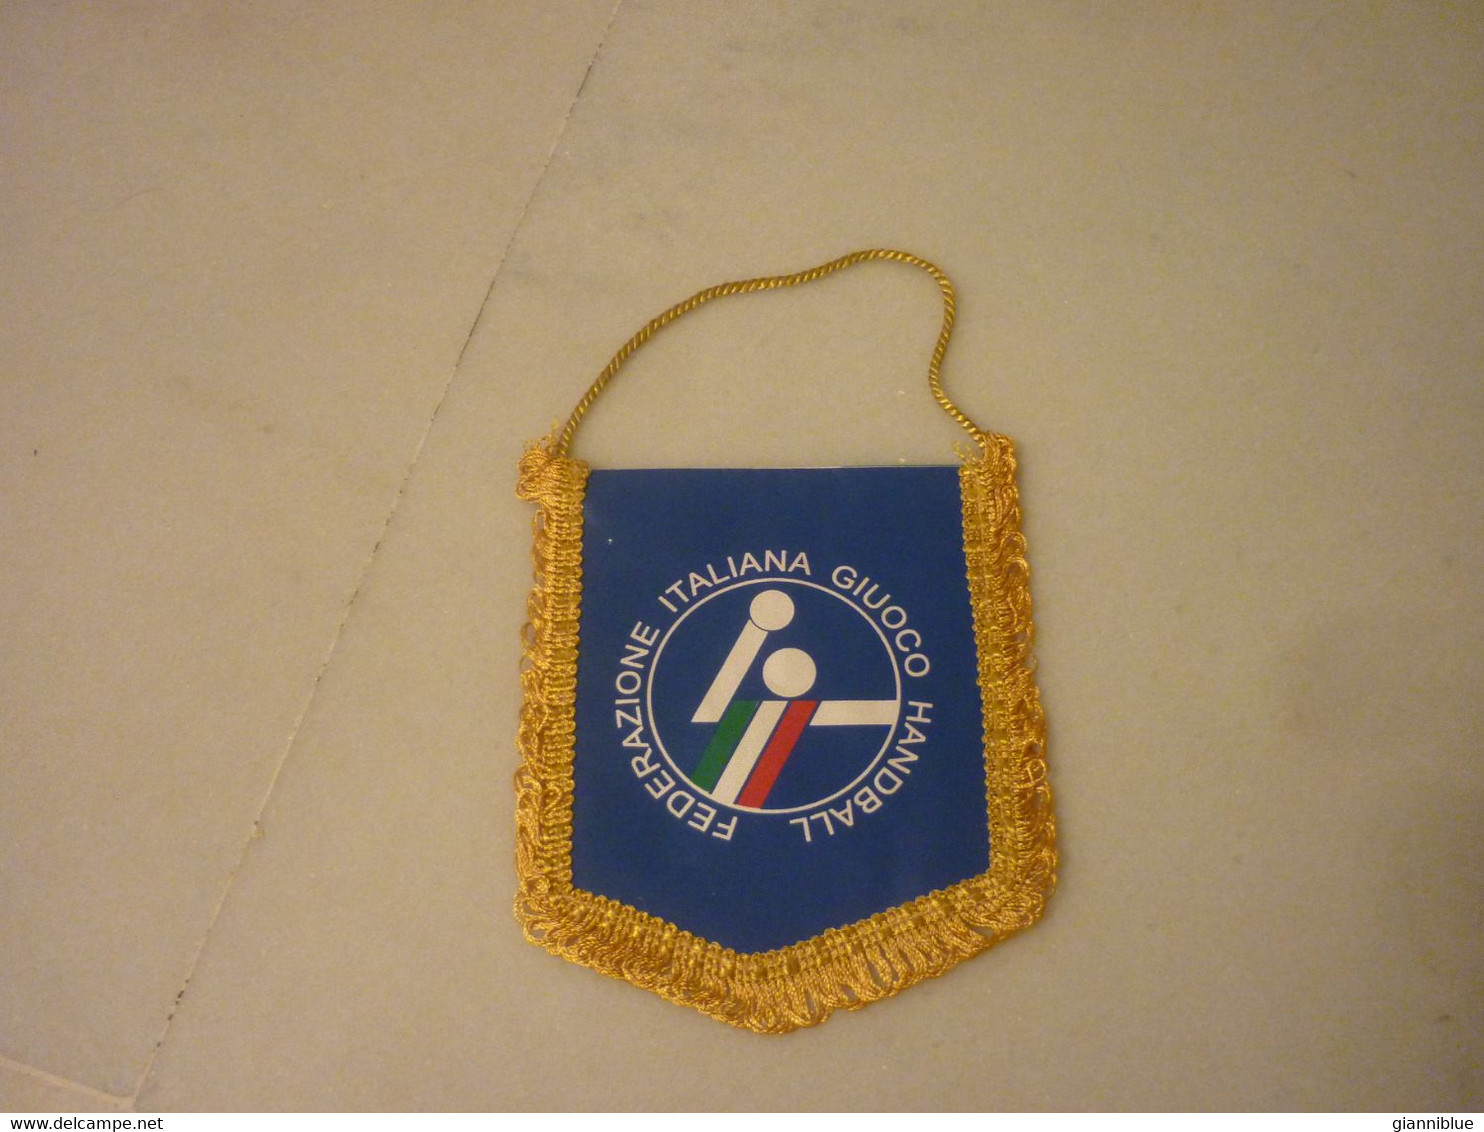 Italian Handball Italy Federation Pennant - Palla A Mano